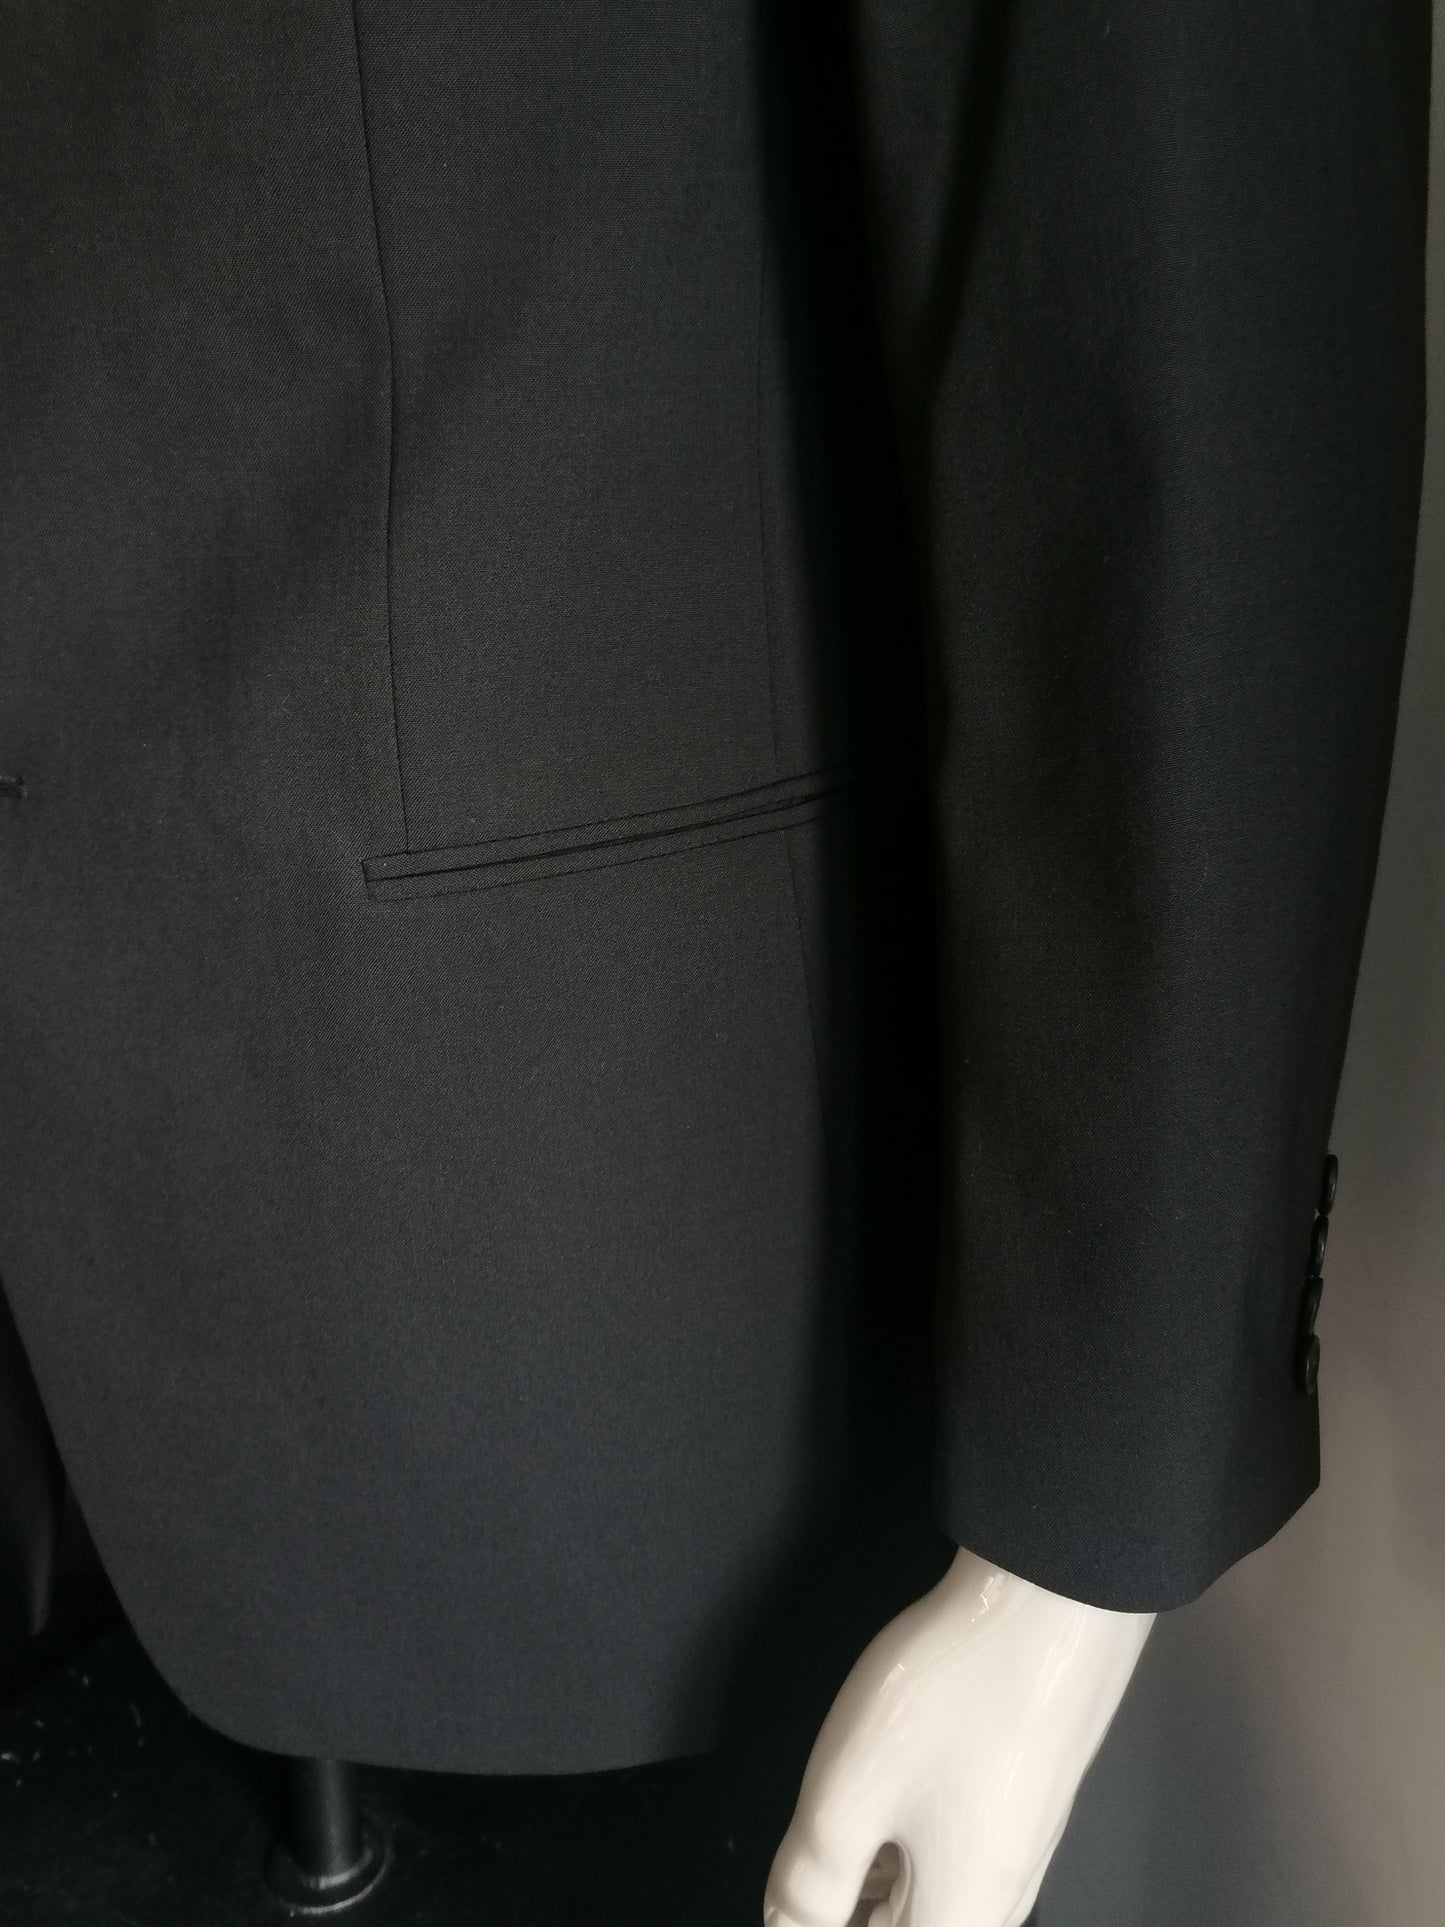 Costume de laine Van Gils. Couleur noire. Taille combi: Taille de la veste 50 / m & pantalons MT 54 / L